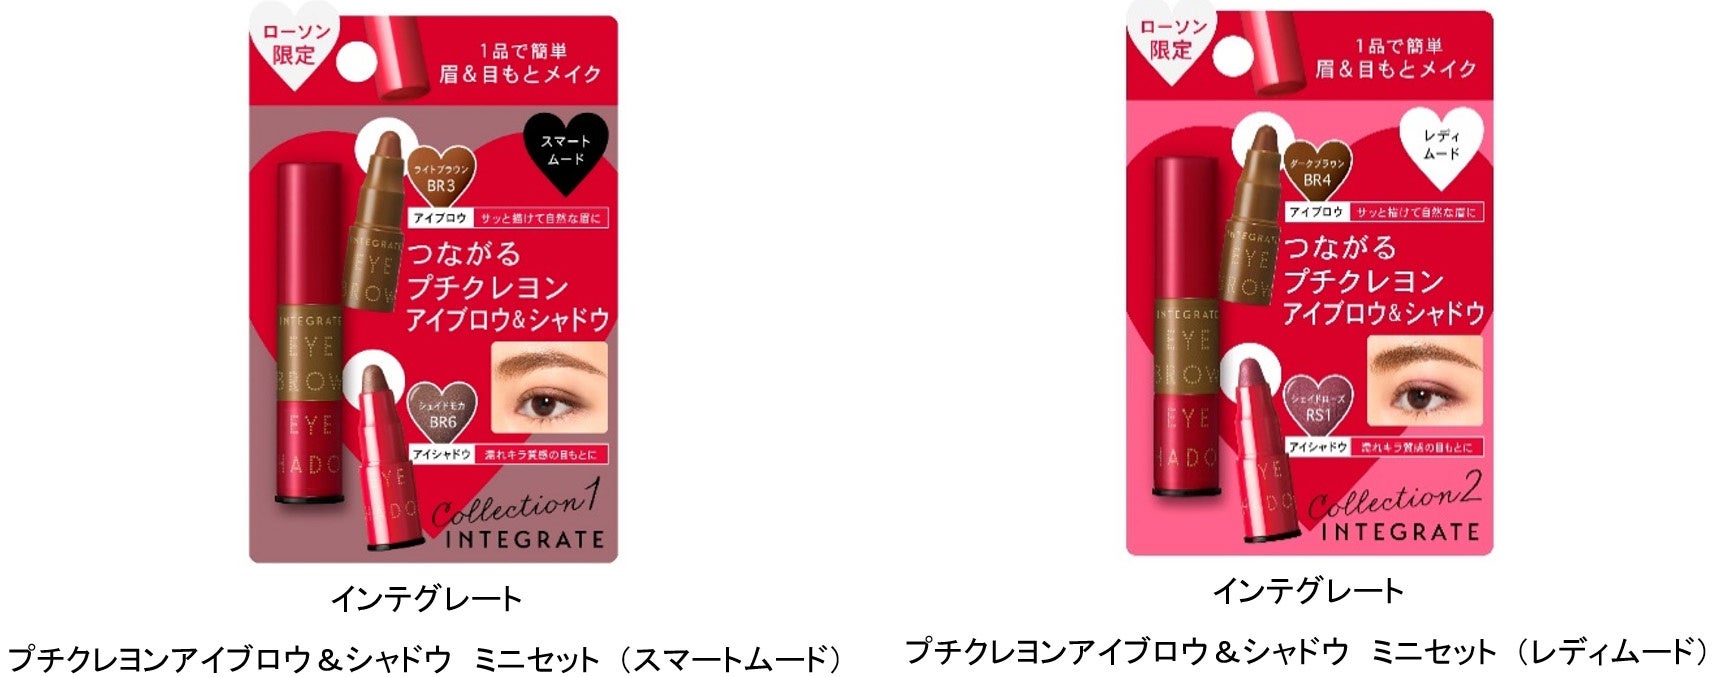 免疫力を見つめるブランド『イミニ』が日本初LPS高濃度※1美容液「ファイン100」を発売